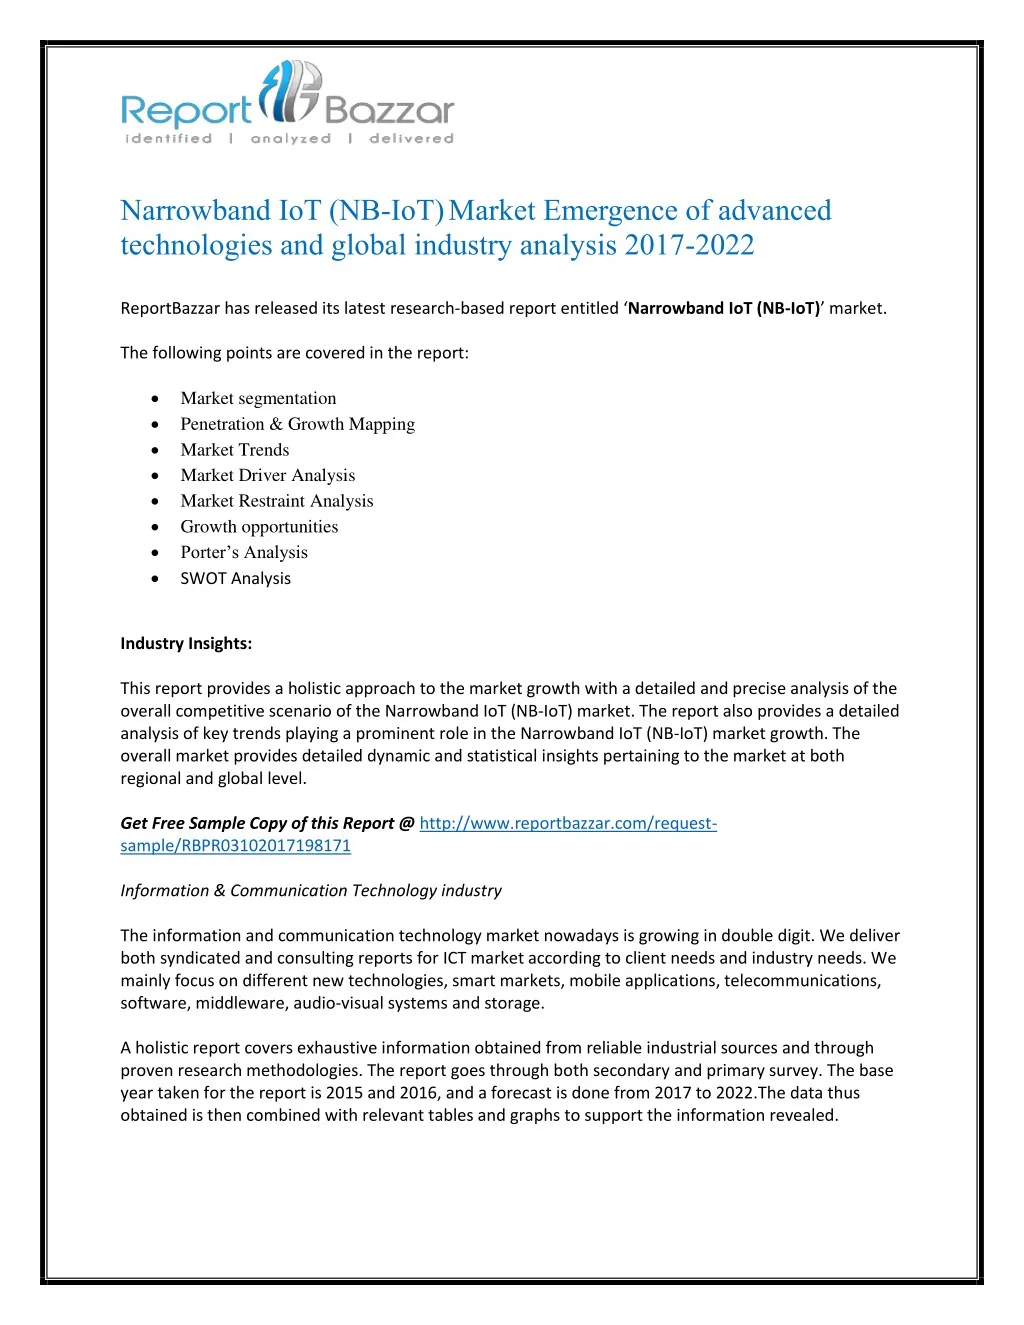 narrowband iot nb iot market emergence